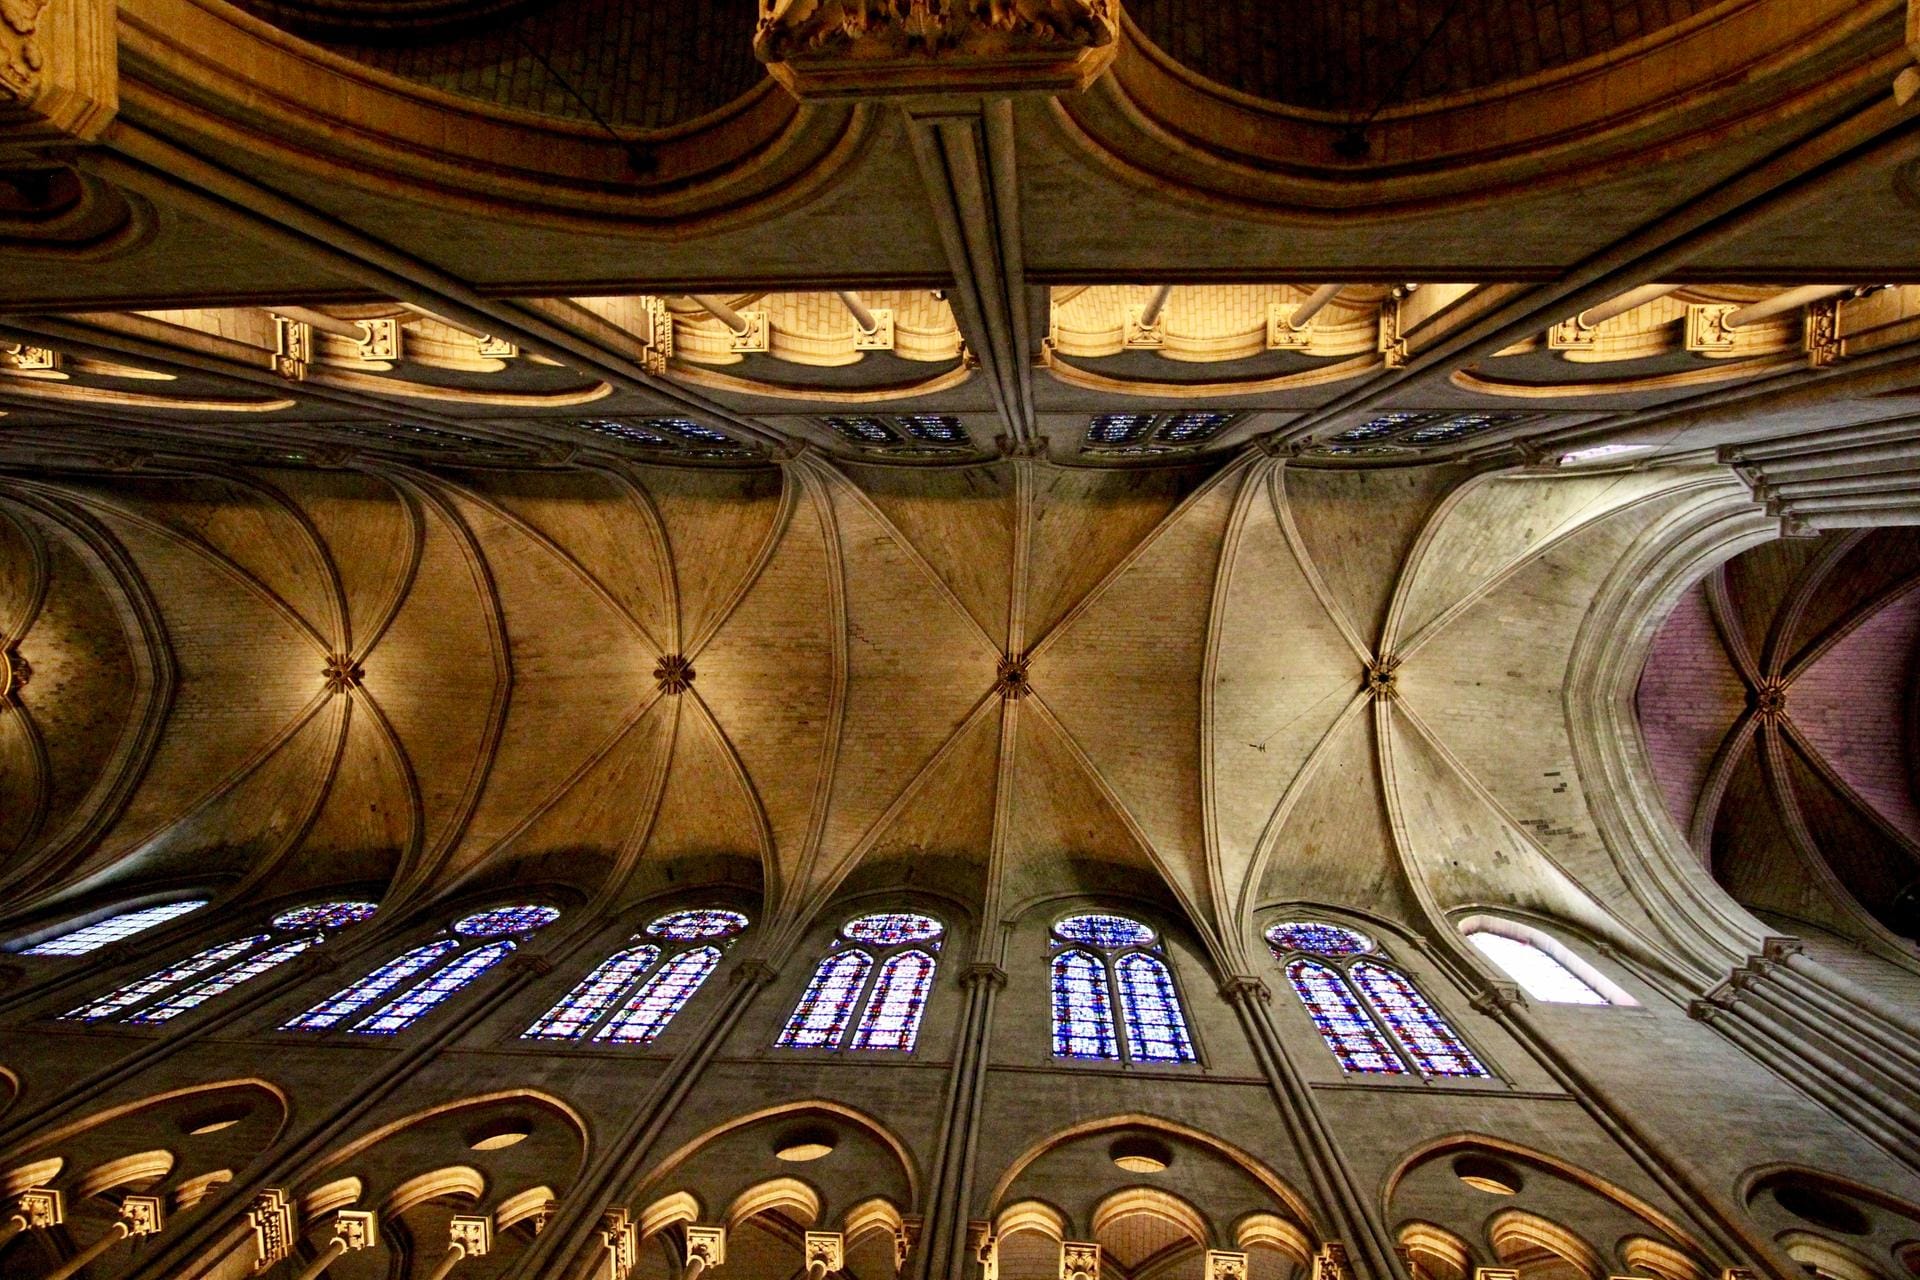 Deckenansicht, innen, 2017: Die gewölbte Decke des Hauptschiffs von Notre-Dame war neben den farbigen Fenstern ein besonderes Element der Kirche. Beim brand am 15.04.2019 ist diese Decke vollkommen abgebrannt und eingestürzt.